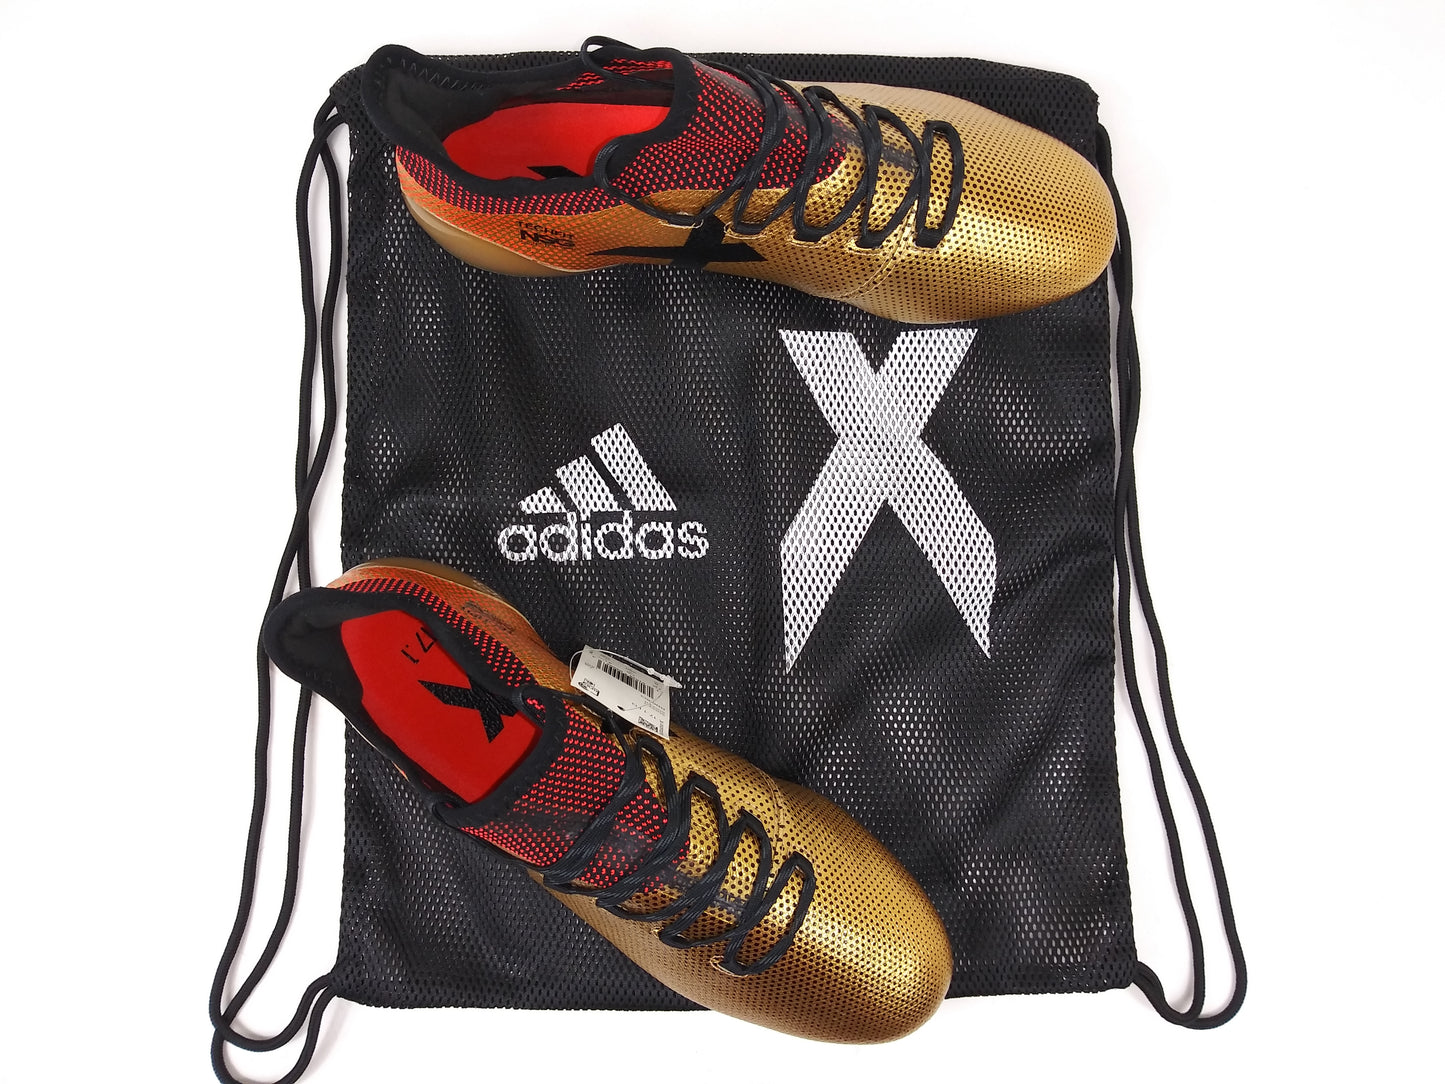 Adidas  X 17.1 FG Gold